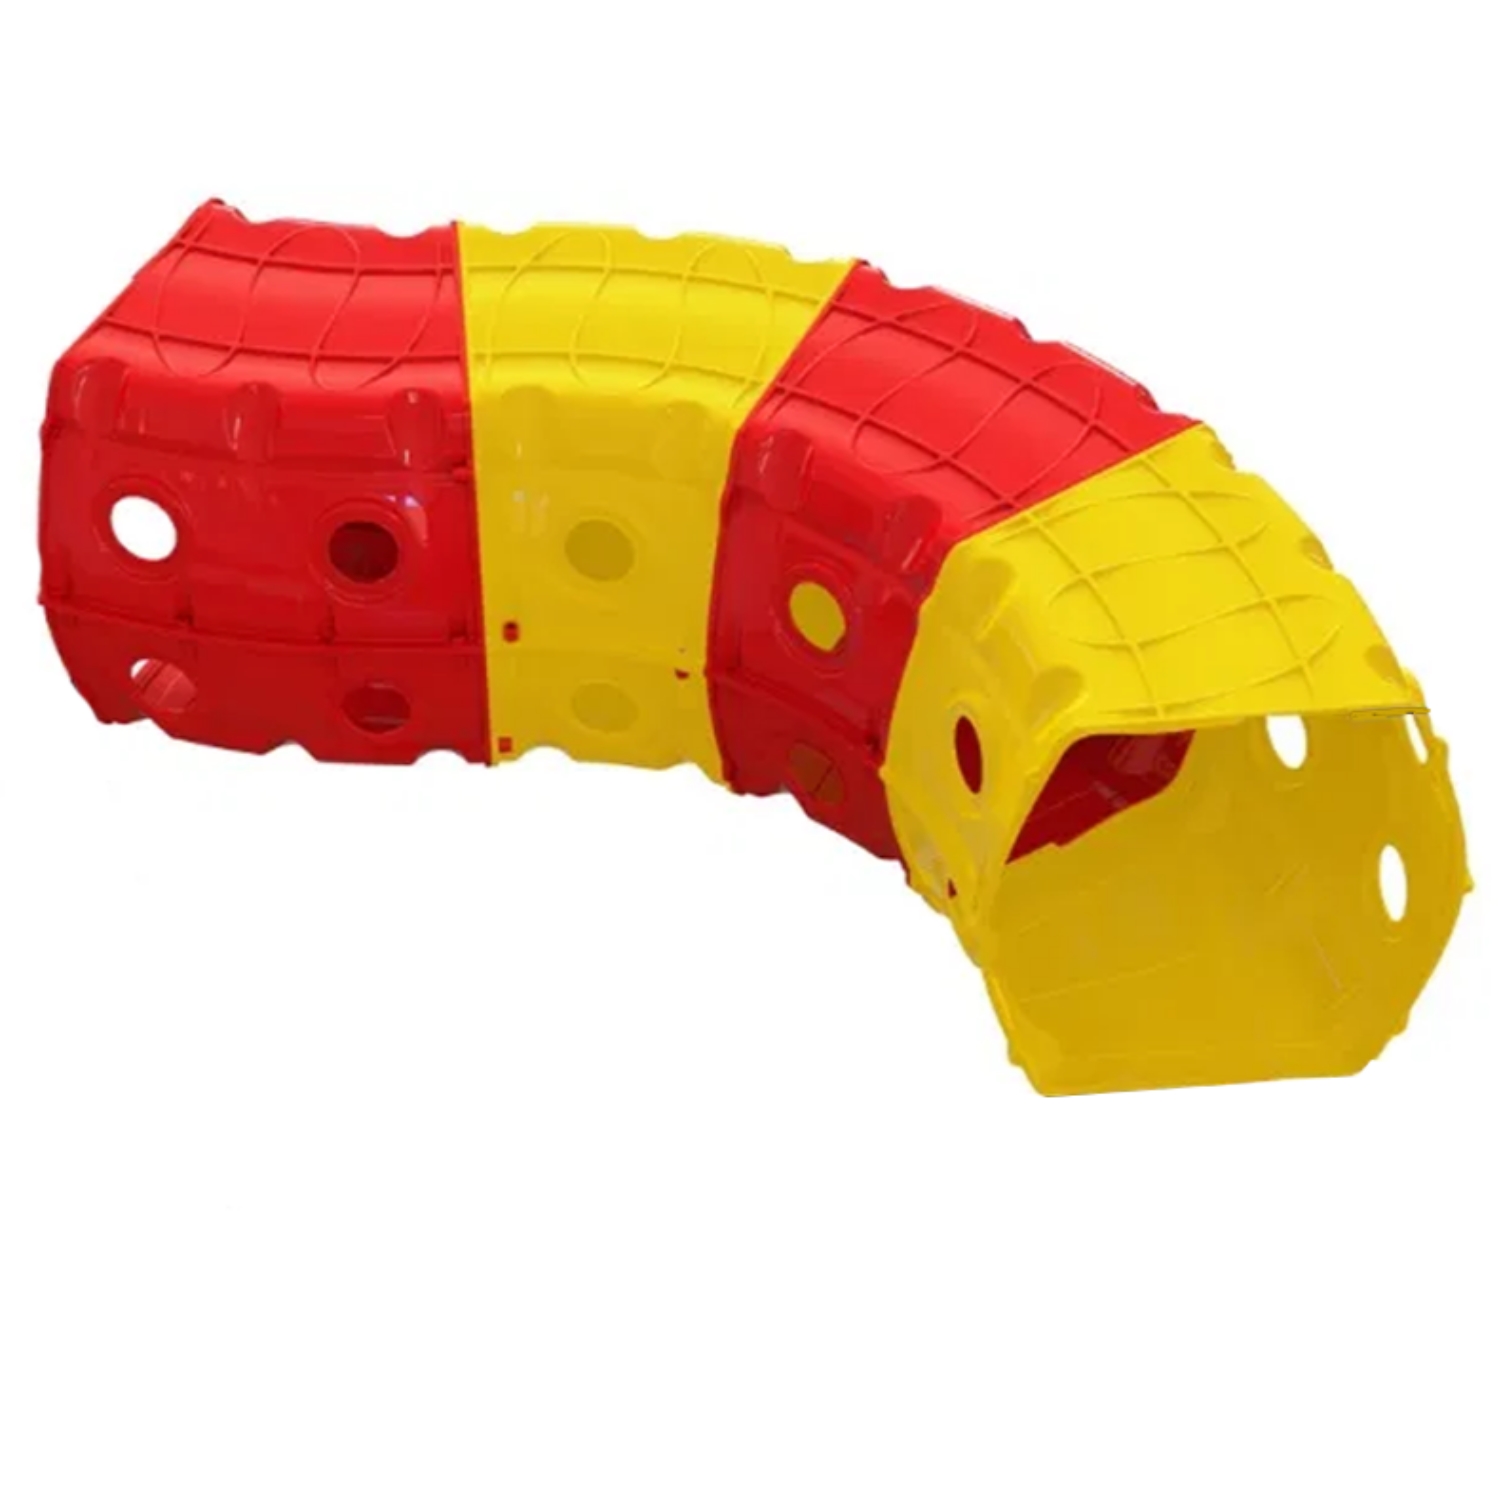 Игровой туннель для ползания Doloni из 4-х секций желто-красный 1х1.5х0.5 м - фото 1